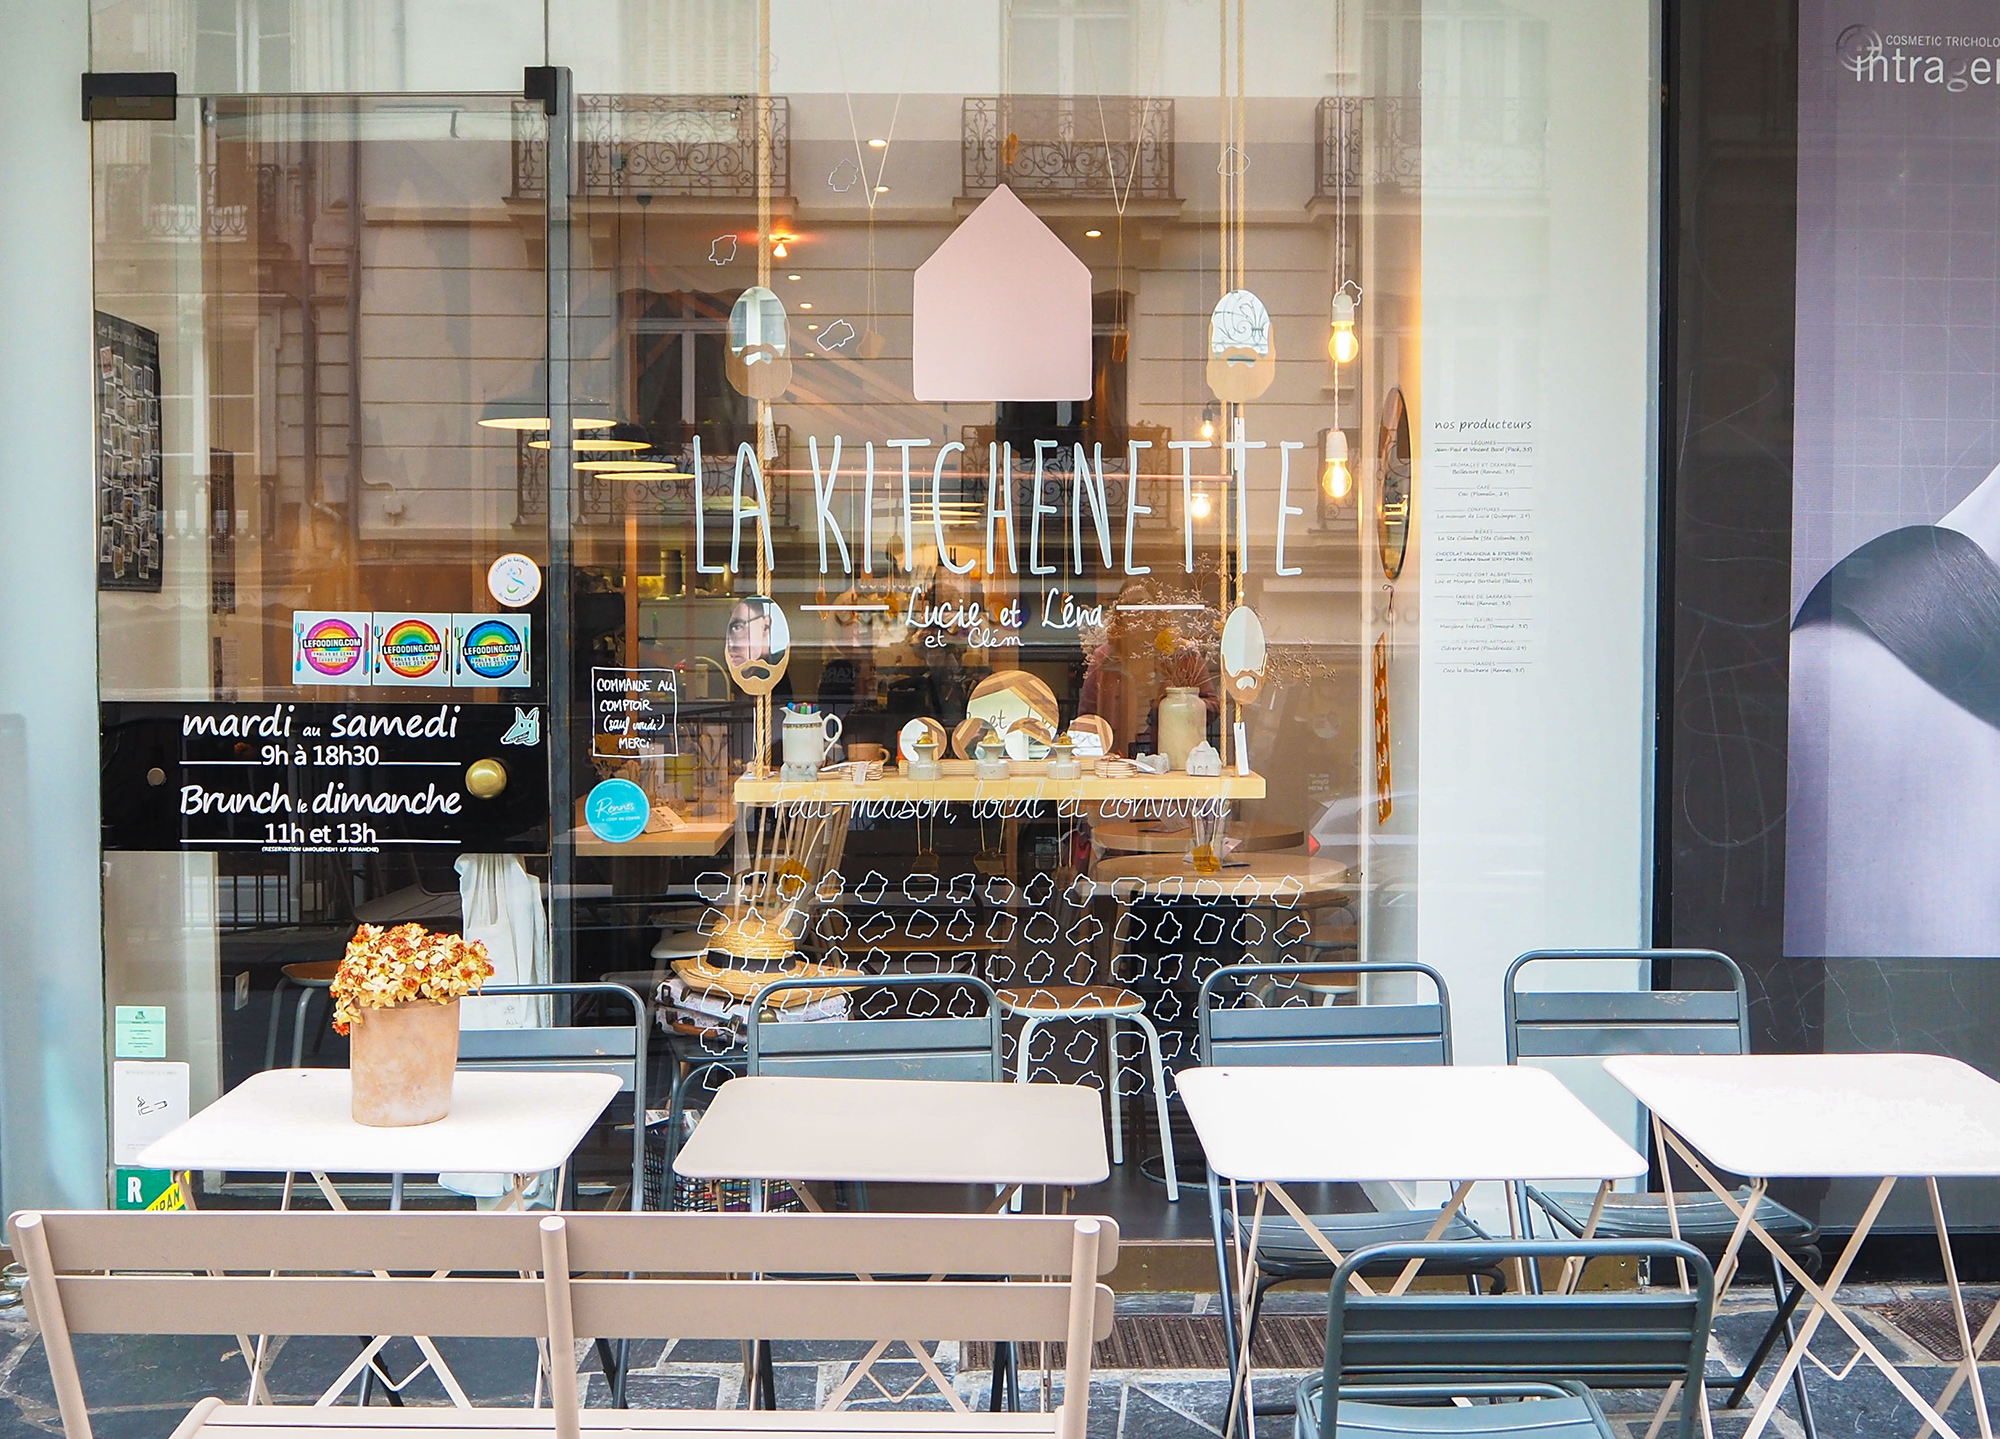 La kitchenette - coffee shop et restaurant bonne adresse rennes